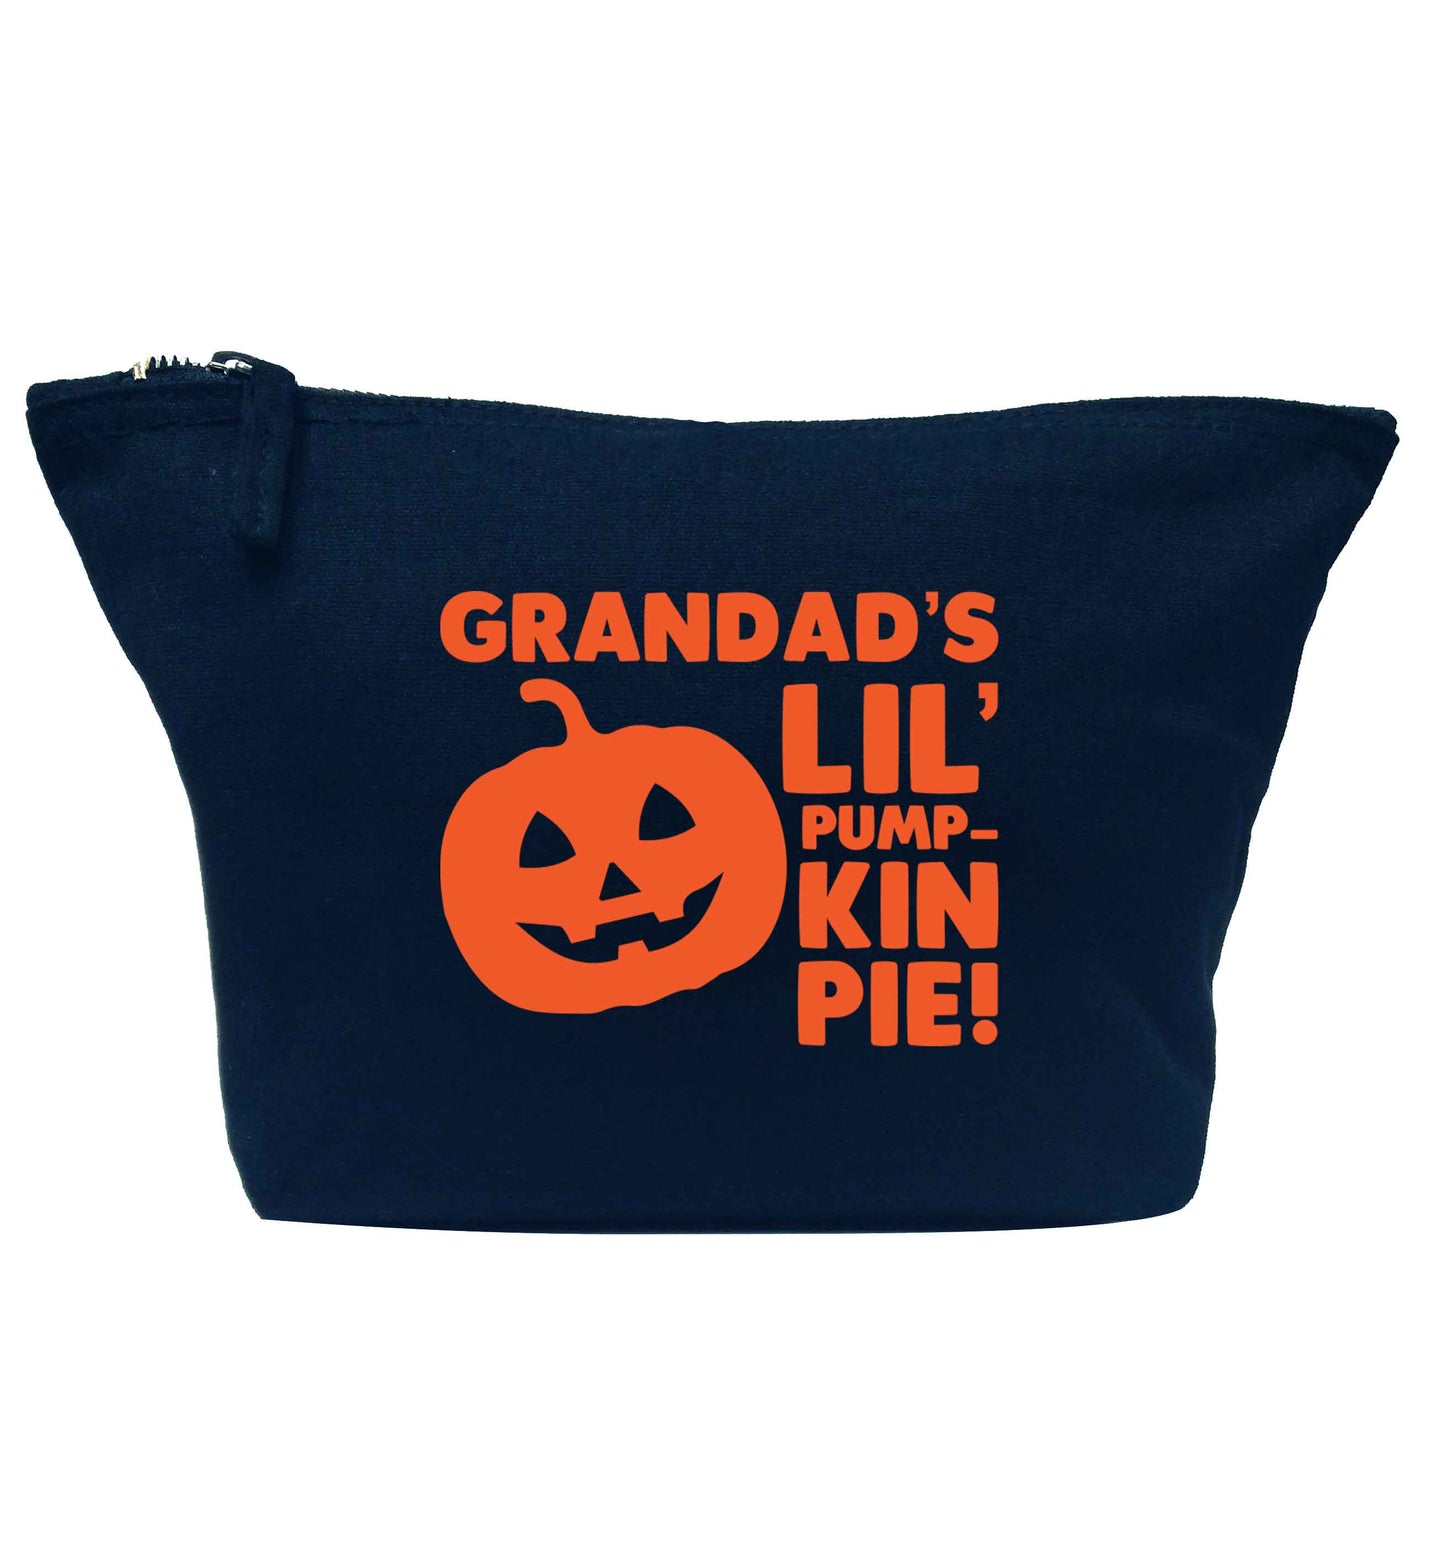 Grandad's lil' pumpkin pie navy makeup bag